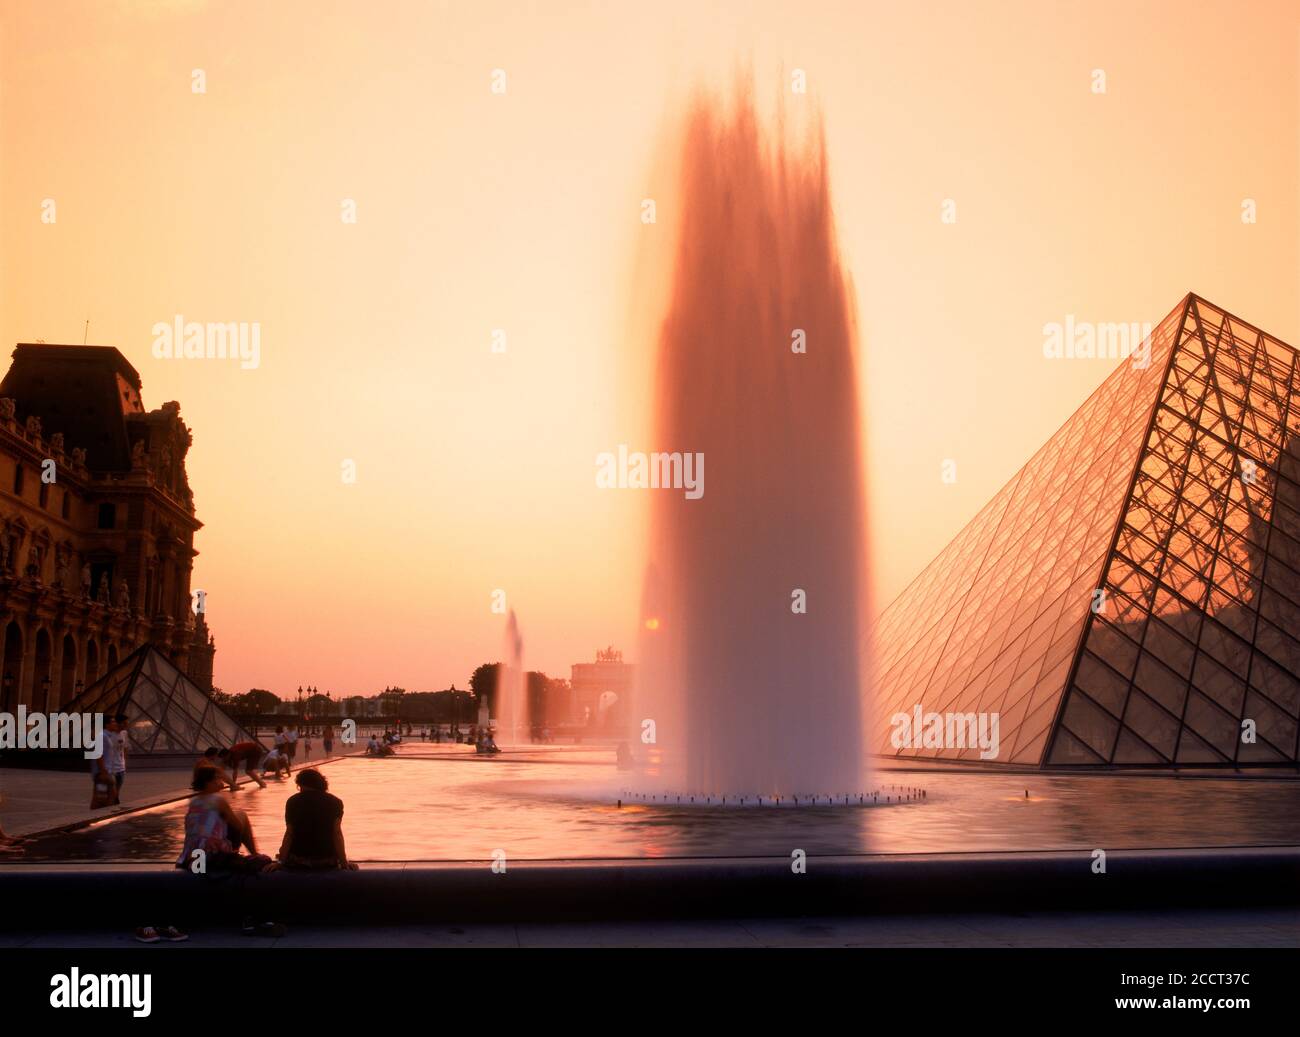 Personnes assises à la fontaine du musée du Louvre à Paris silhoueté dans la lumière du coucher du soleil Banque D'Images